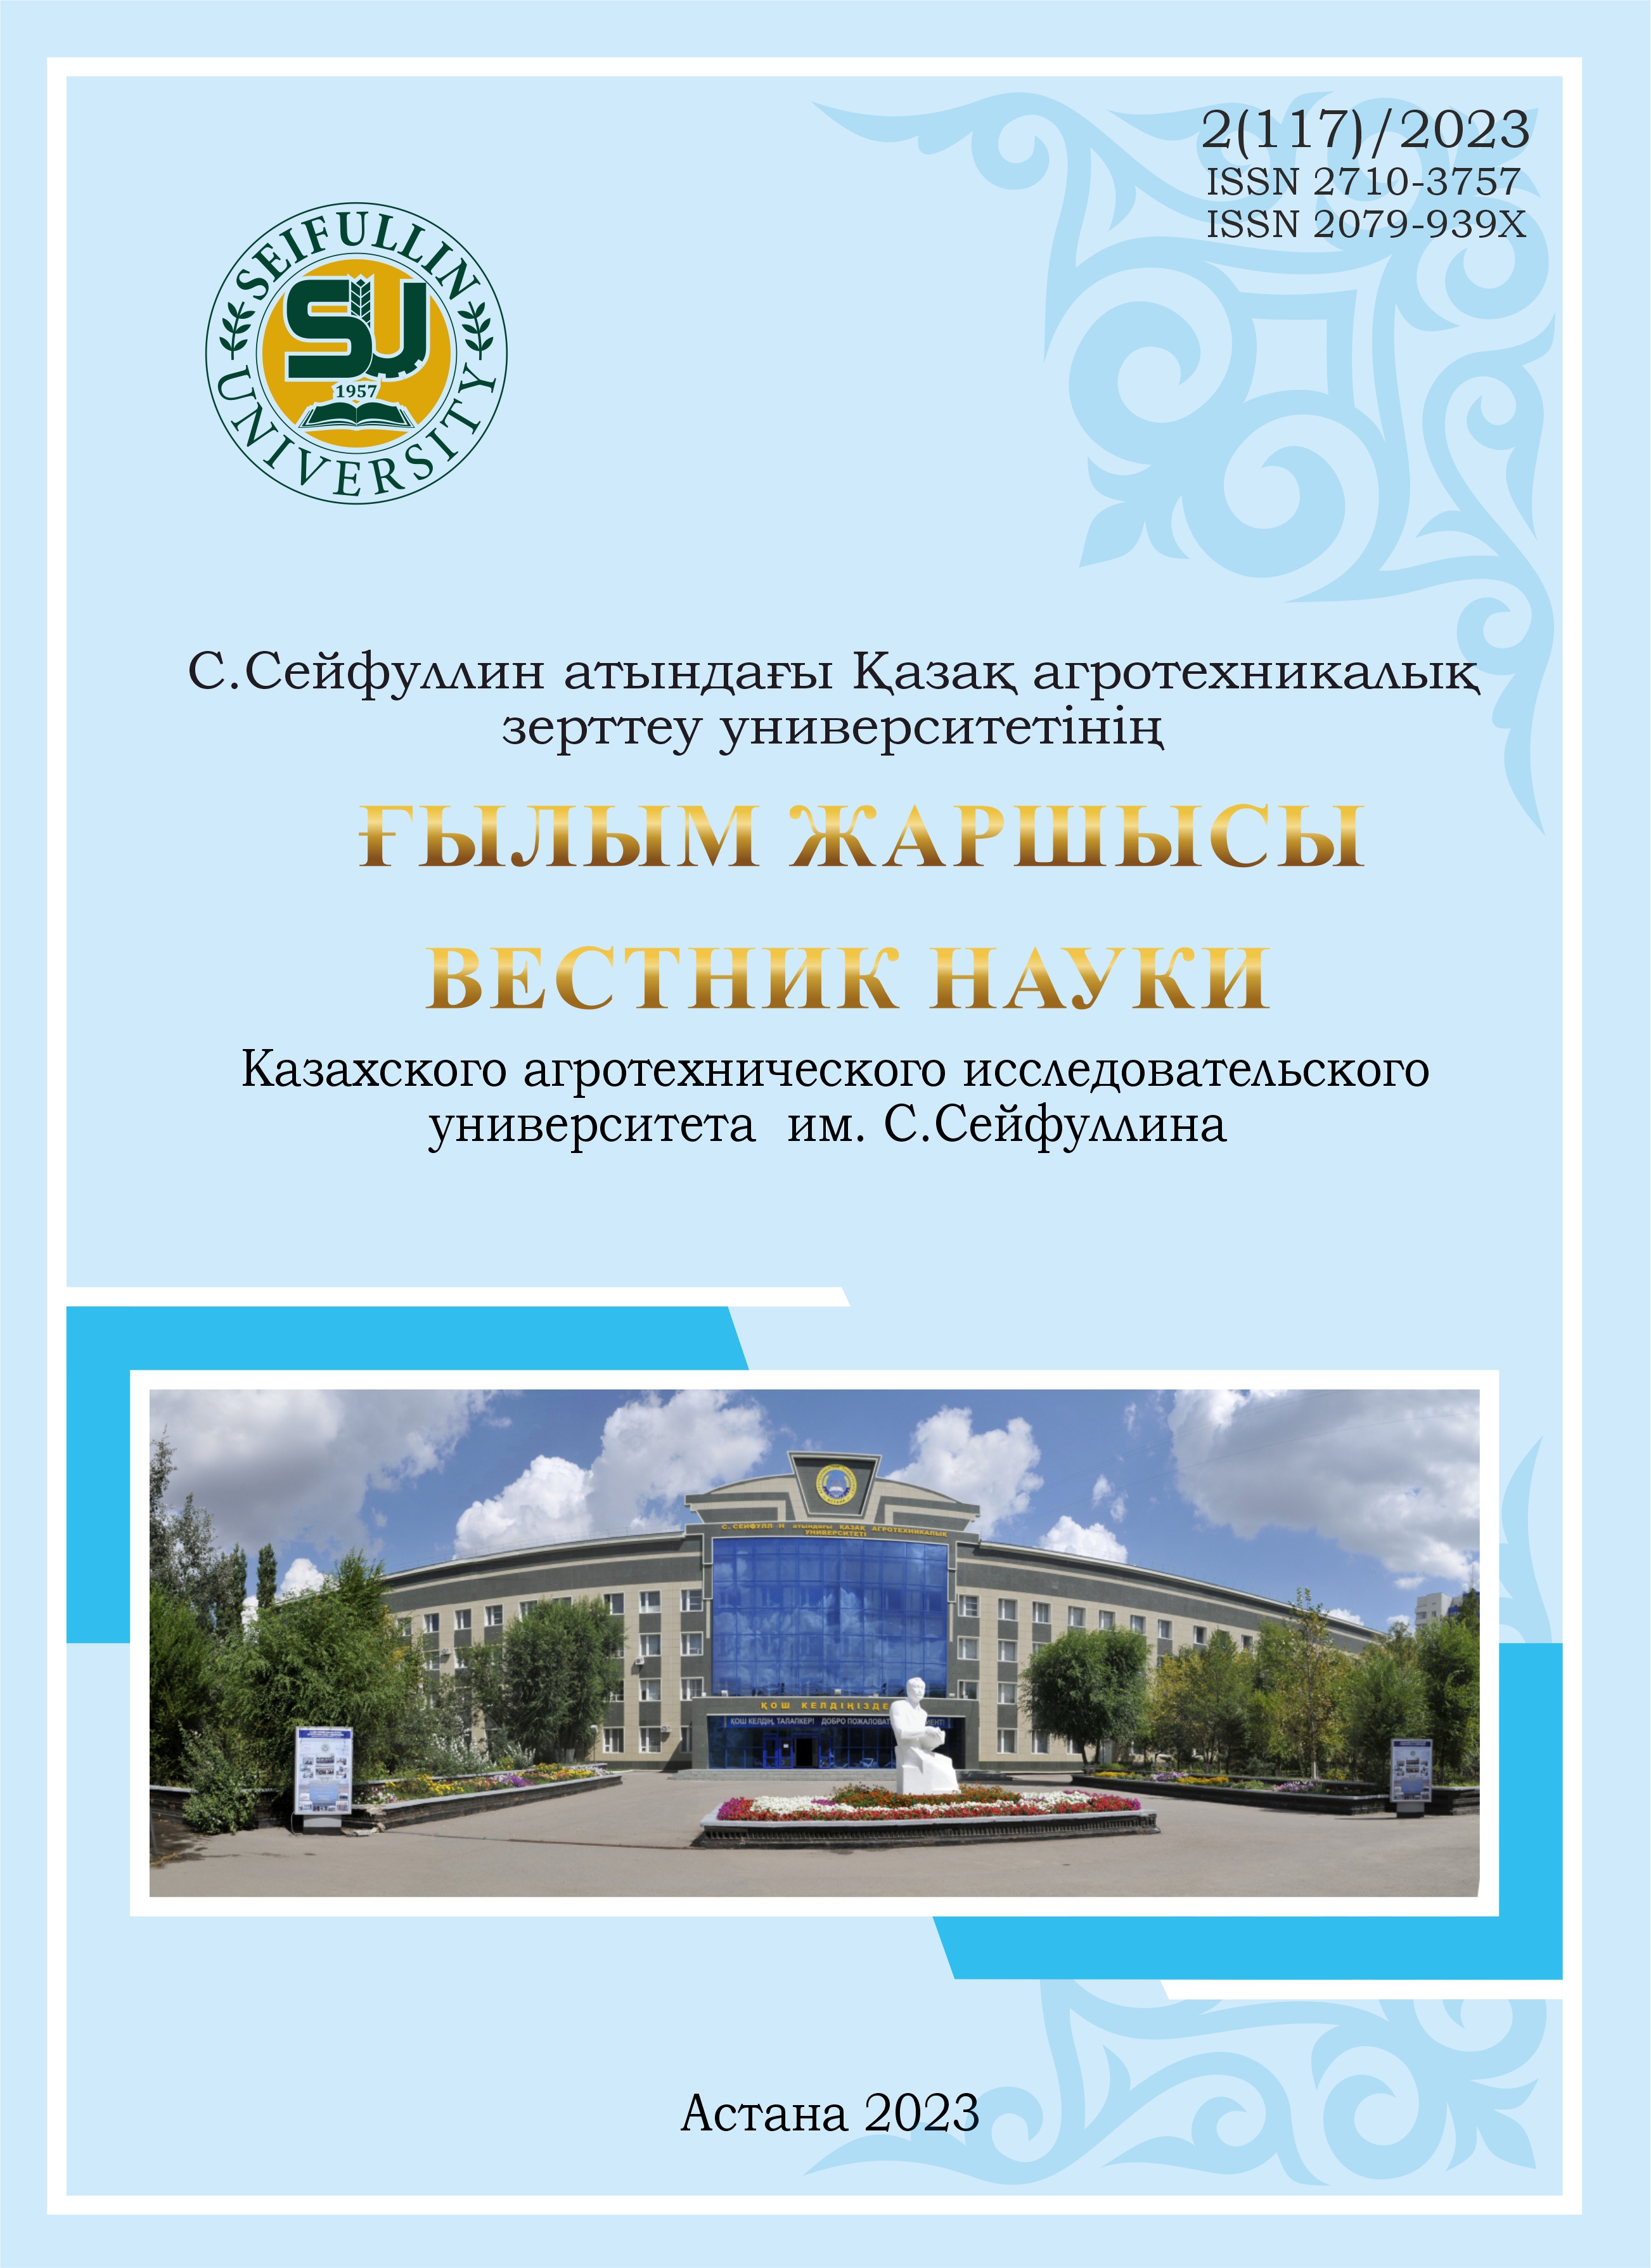 					Показать № 2(117) (2023): Вестник науки "Казахского агротехнического исследовательского университета им С. Сейфуллина"
				